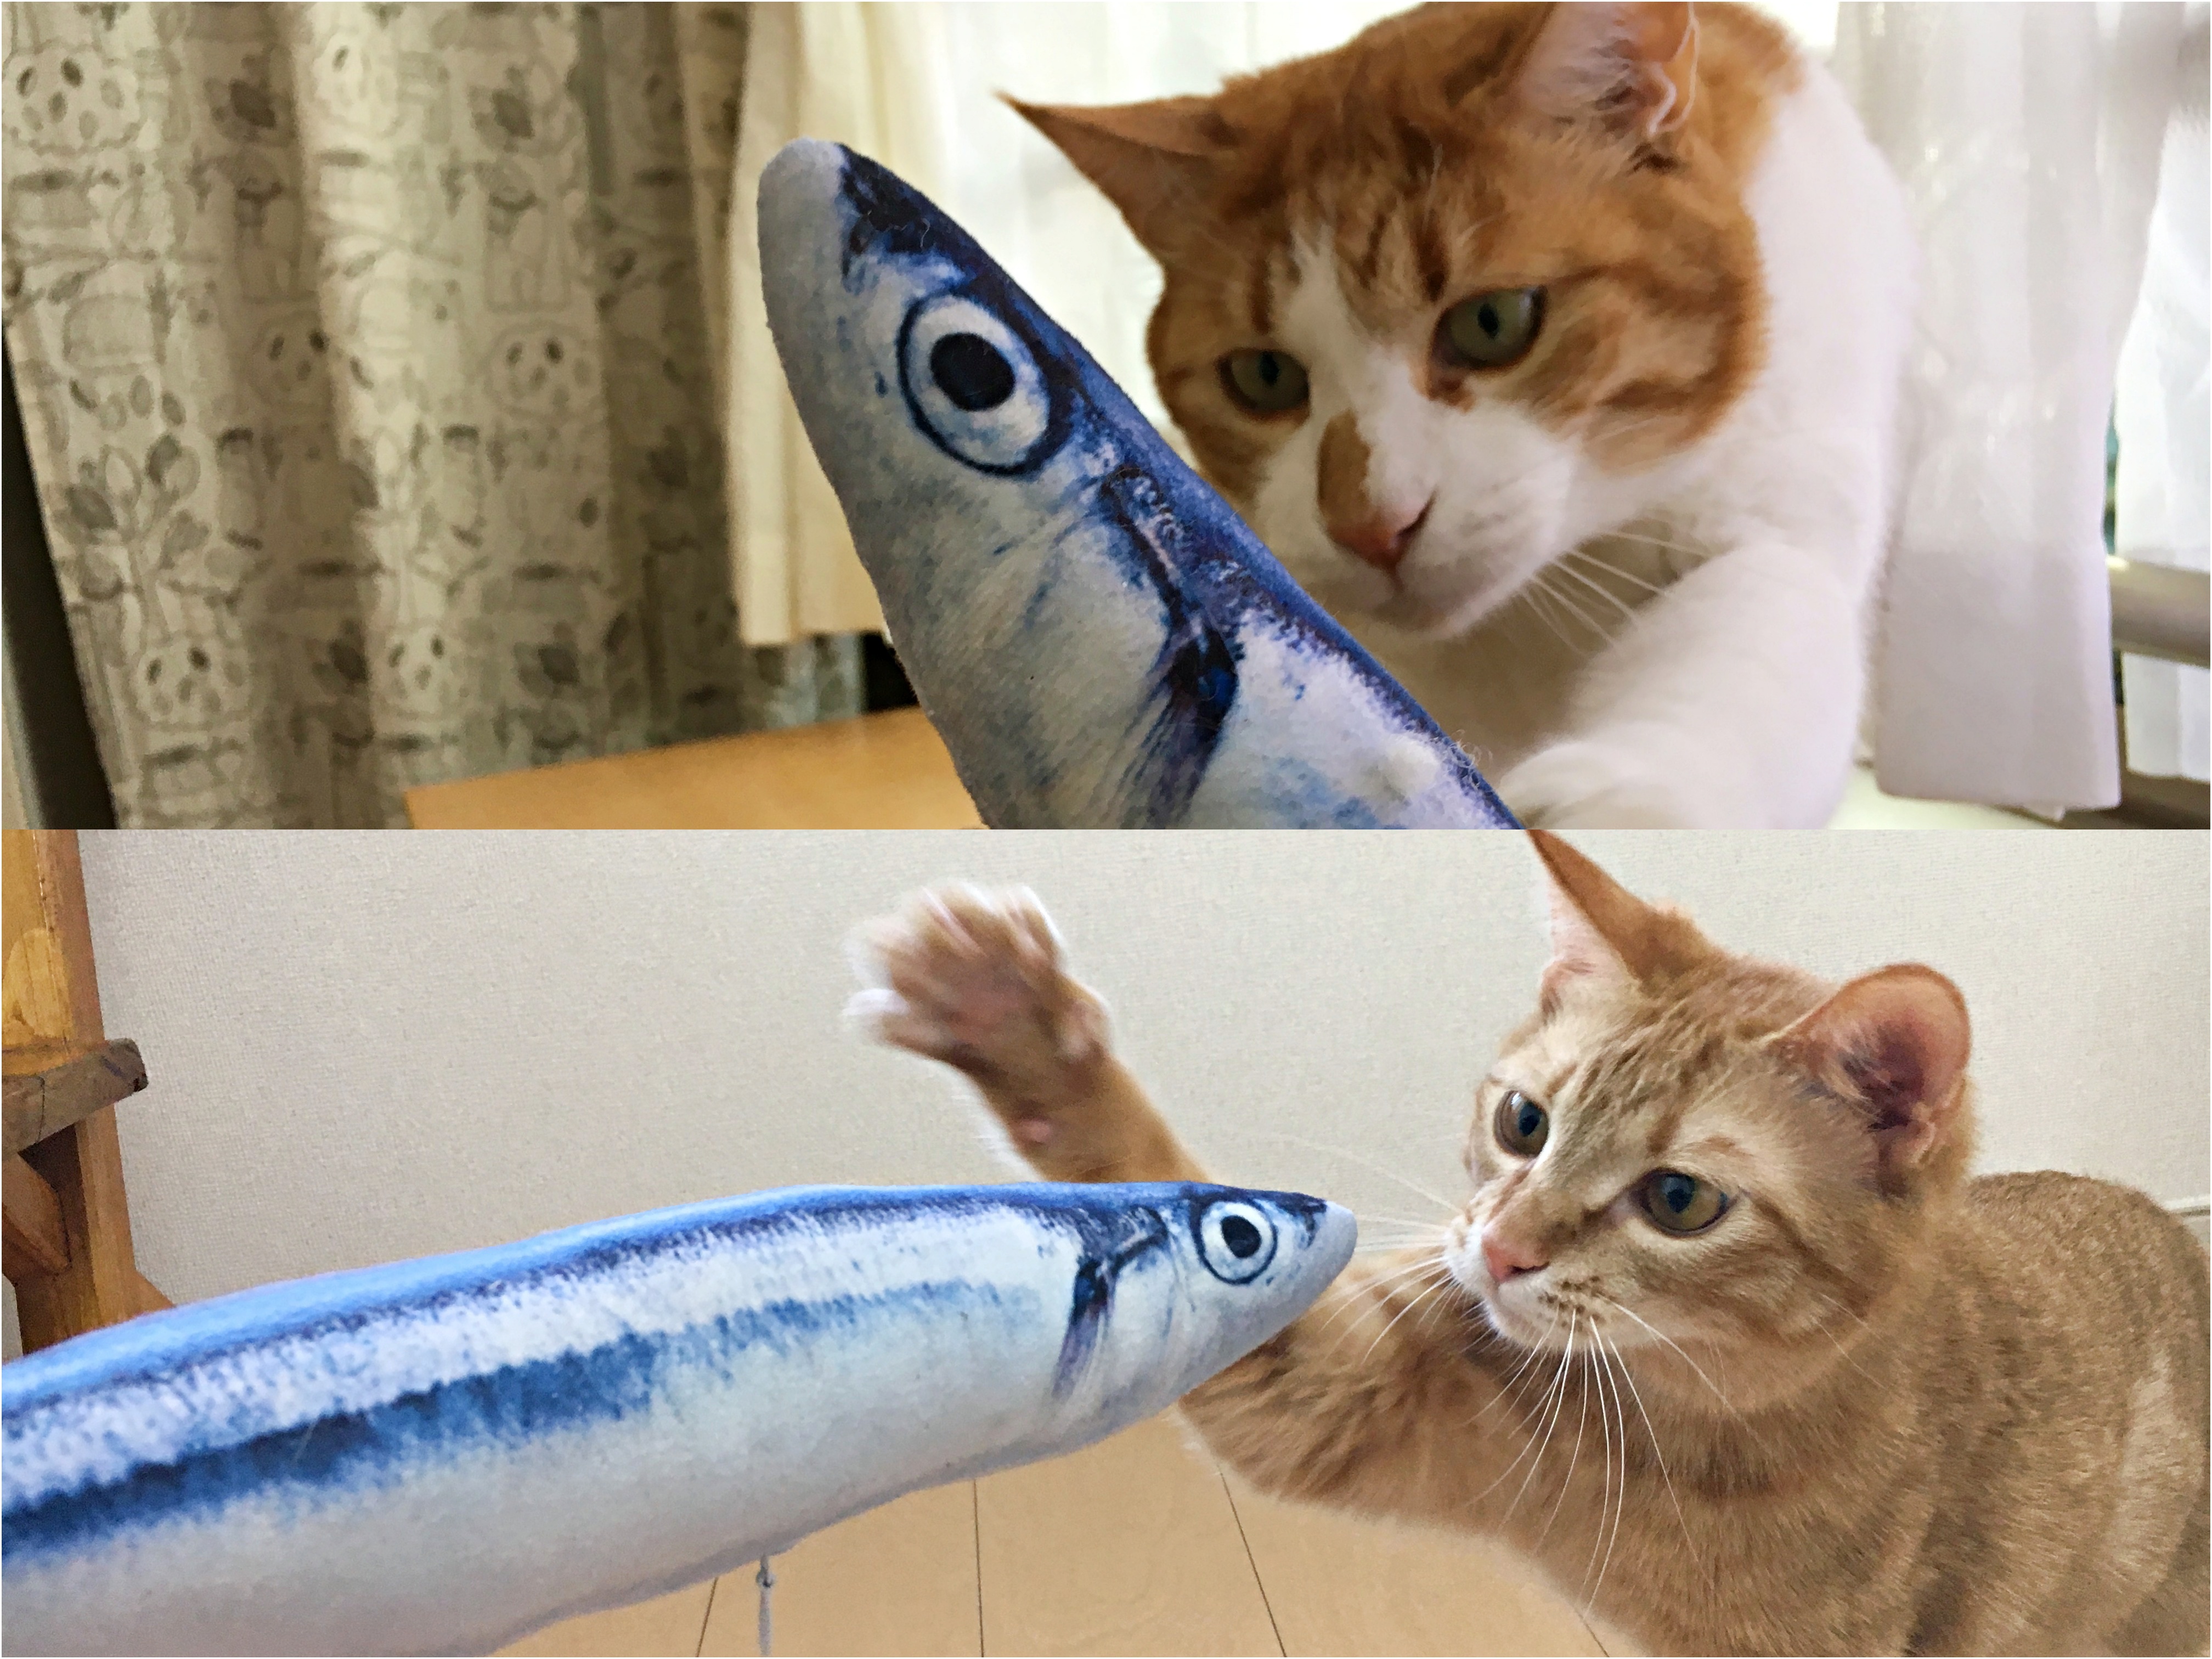 検証 猫は リアルな魚のぬいぐるみ で遊ぶのかプレゼントした結果 海老のように興奮するではないか Pouch ポーチ